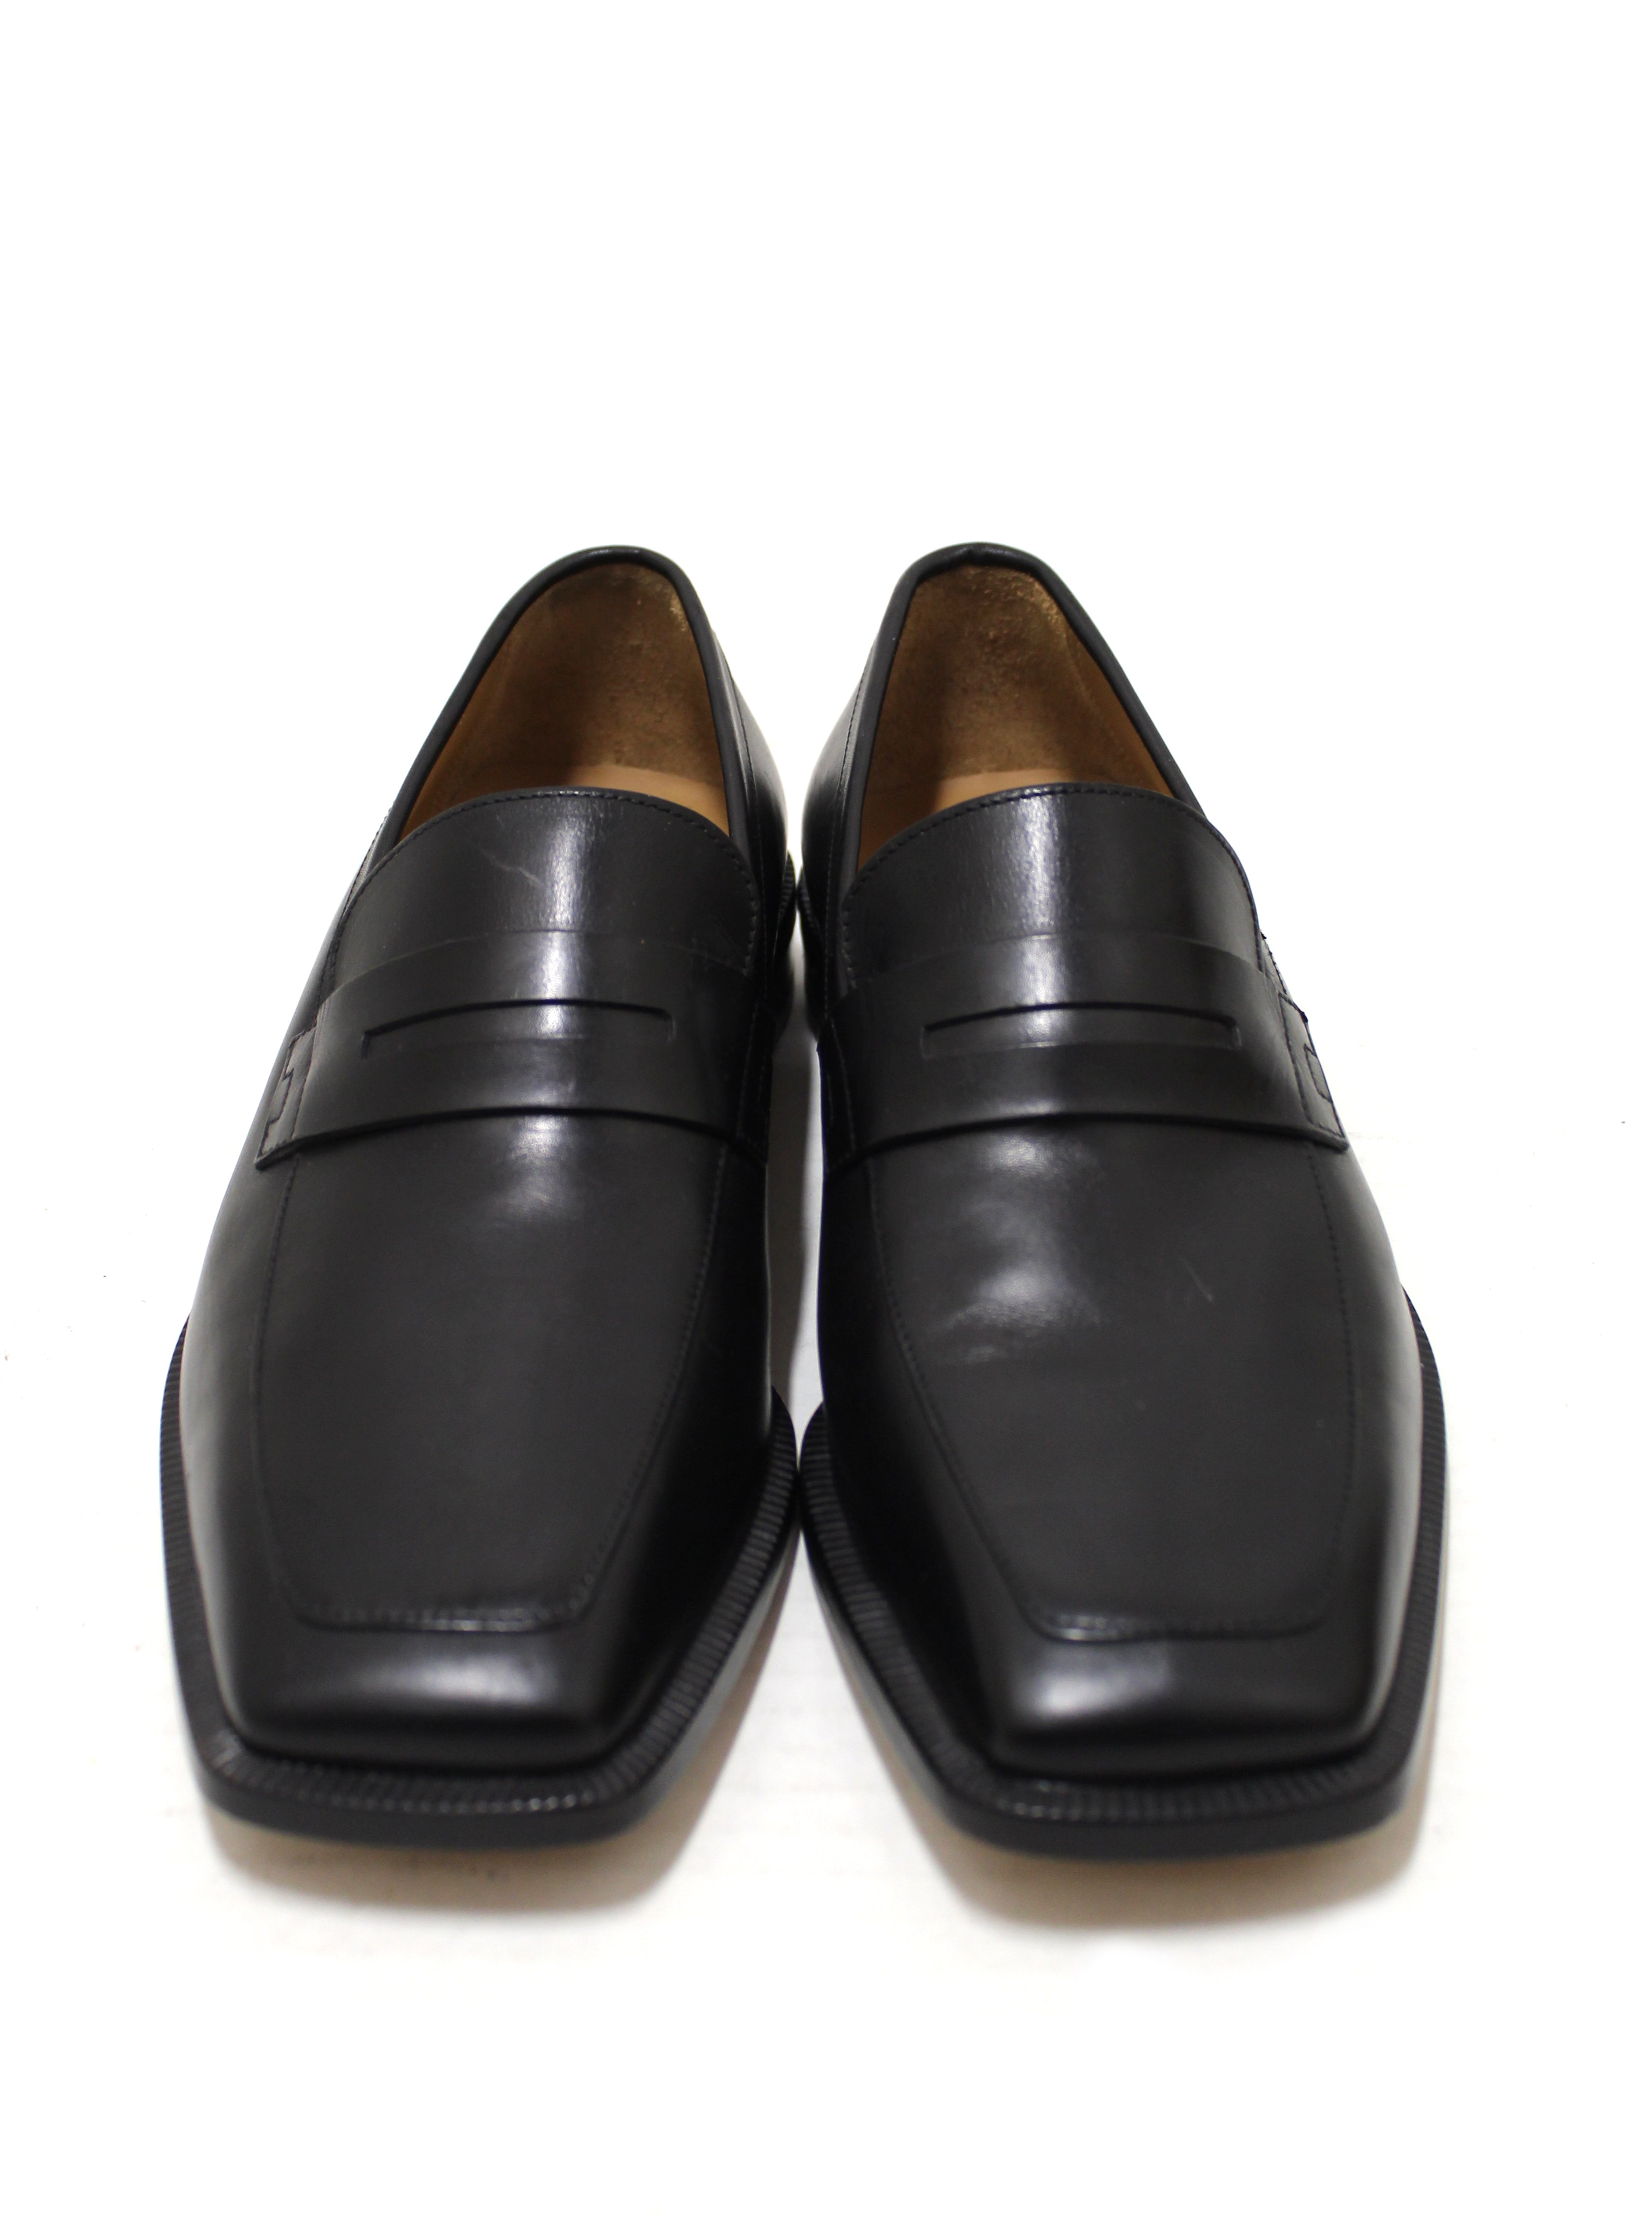 Authentic Louis Vuitton Men's Black Calf Leather Loafer Dress Shoes UK size 6 (US 7)